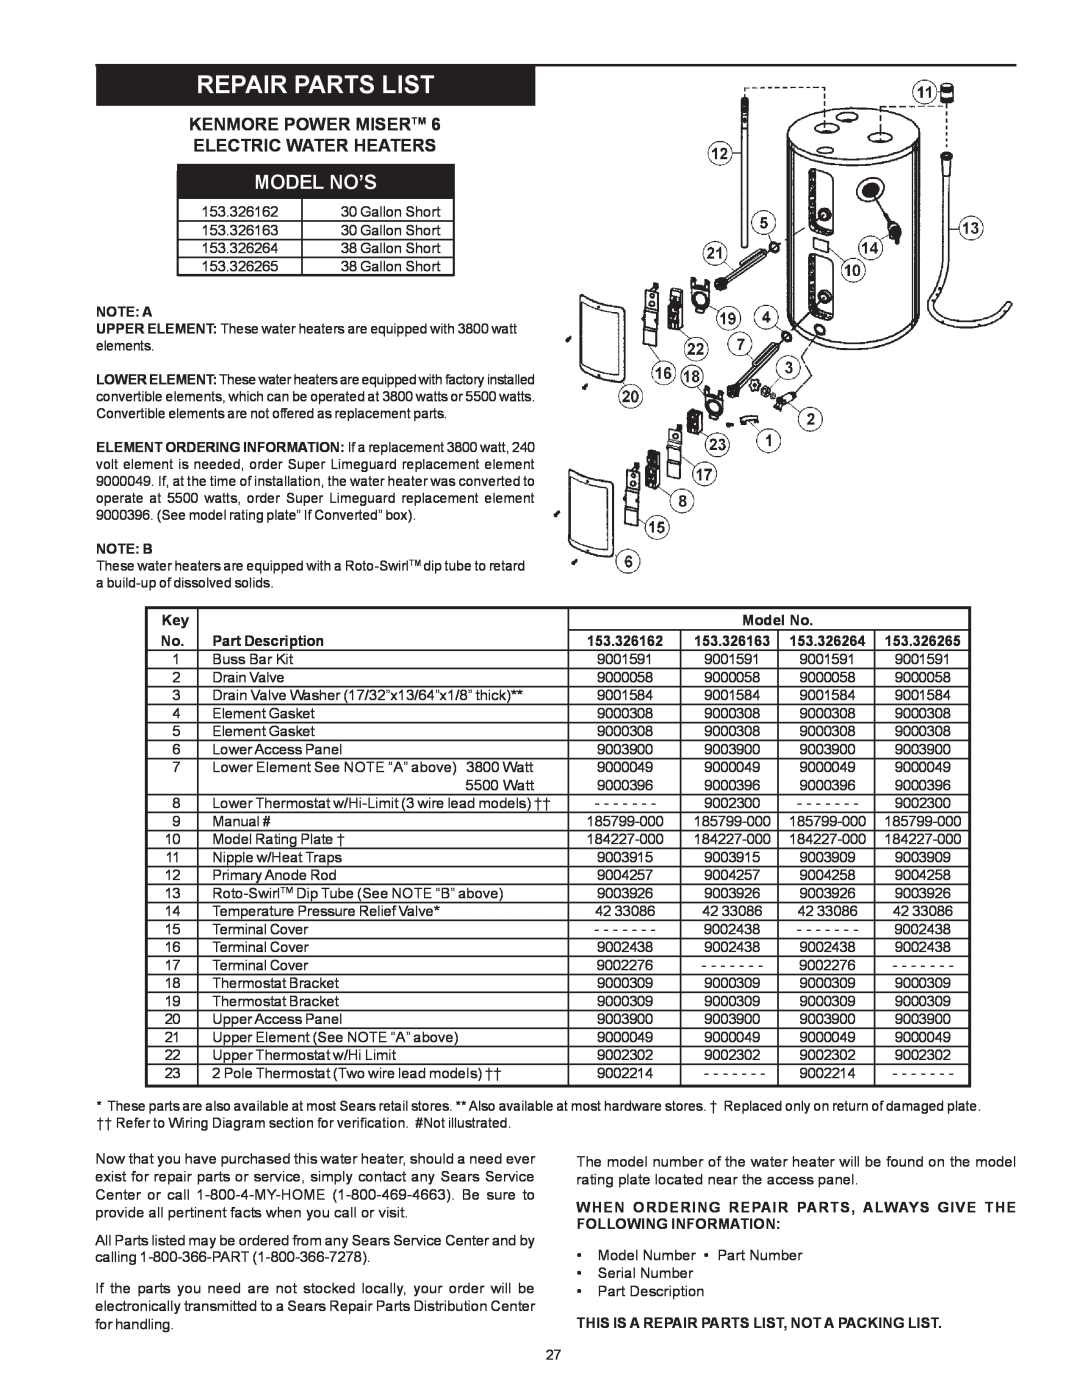 Kenmore 153.326162, 153.326265, 153.326264 Repair Parts List, Kenmore Power Misertm Electric Water Heaters, Model No’S 